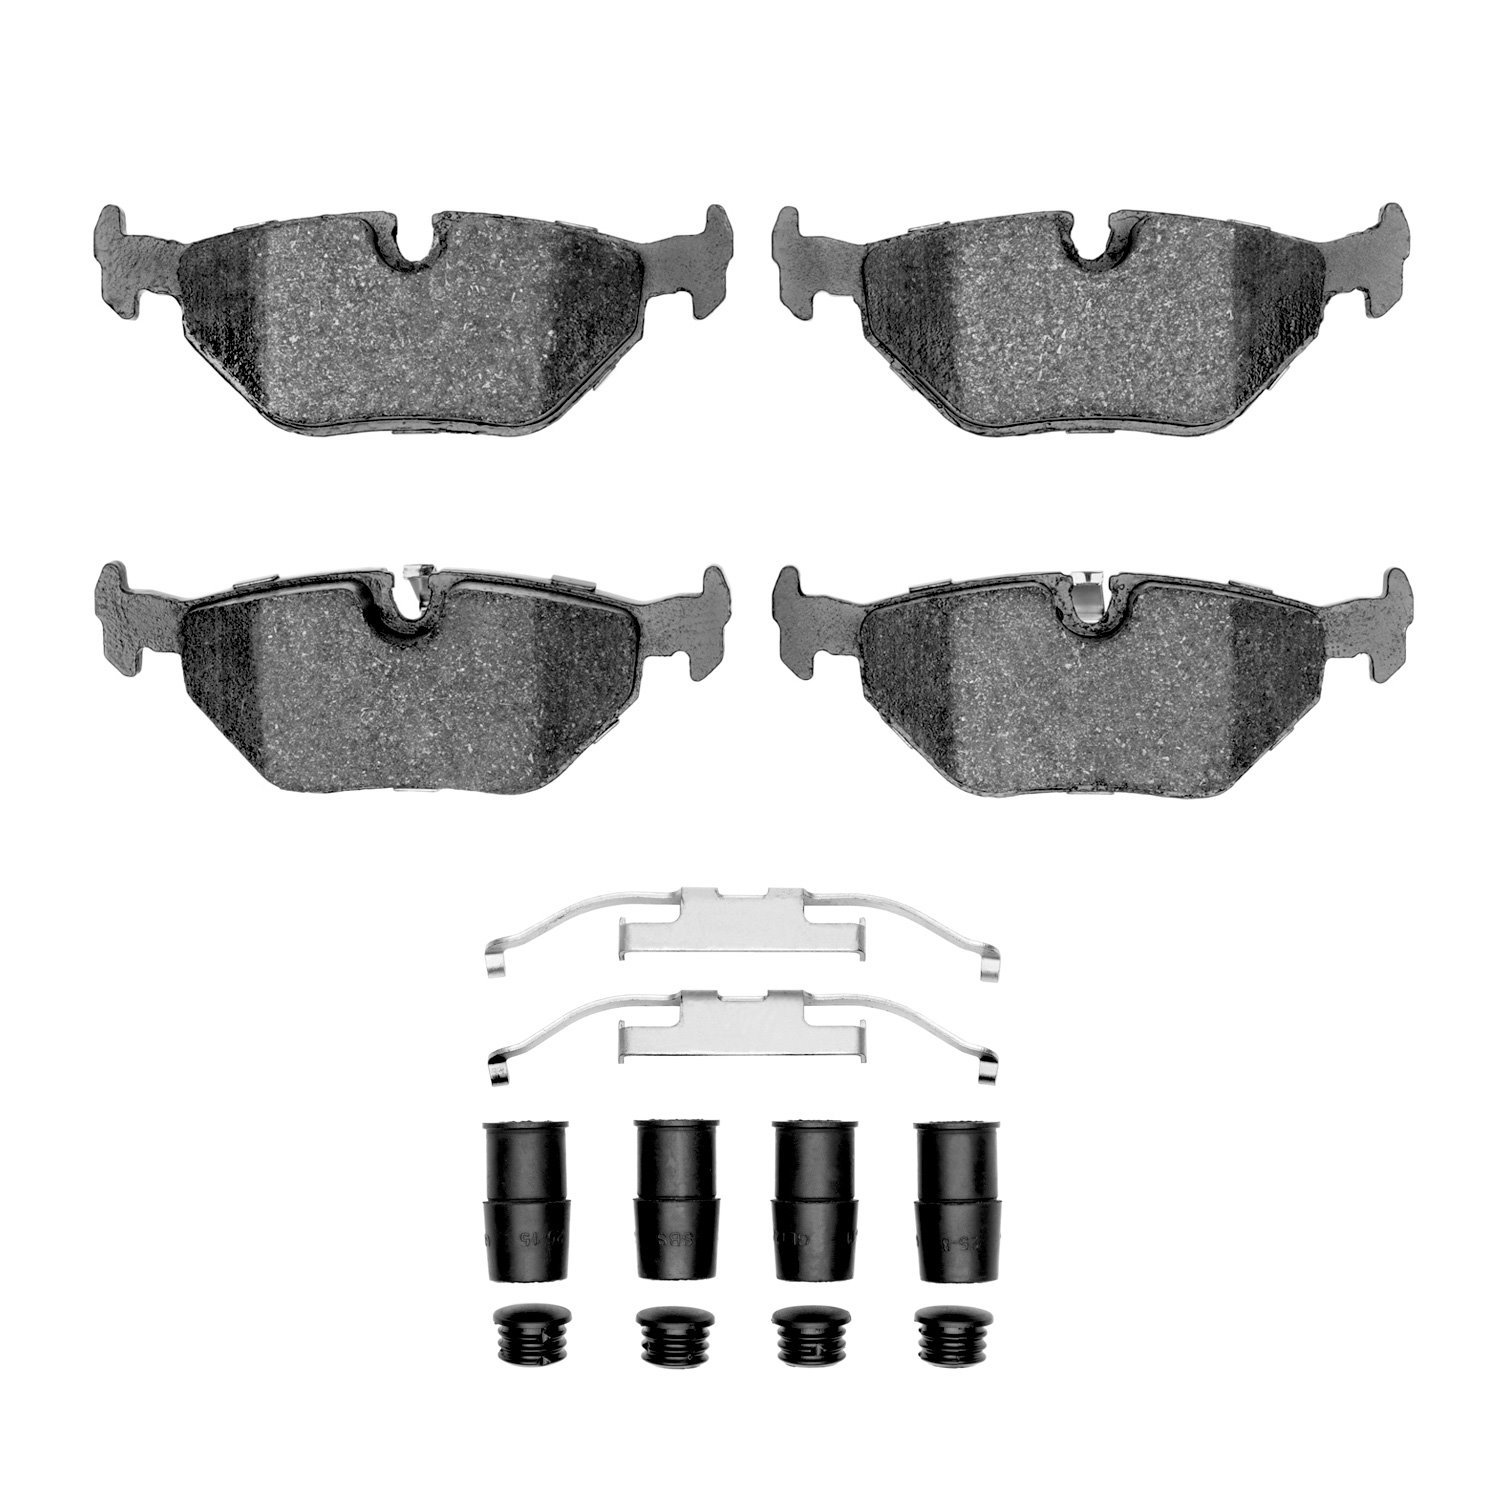 1311-0692-01 3000-Series Semi-Metallic Brake Pads & Hardware Kit, 1991-2008 BMW, Position: Rear